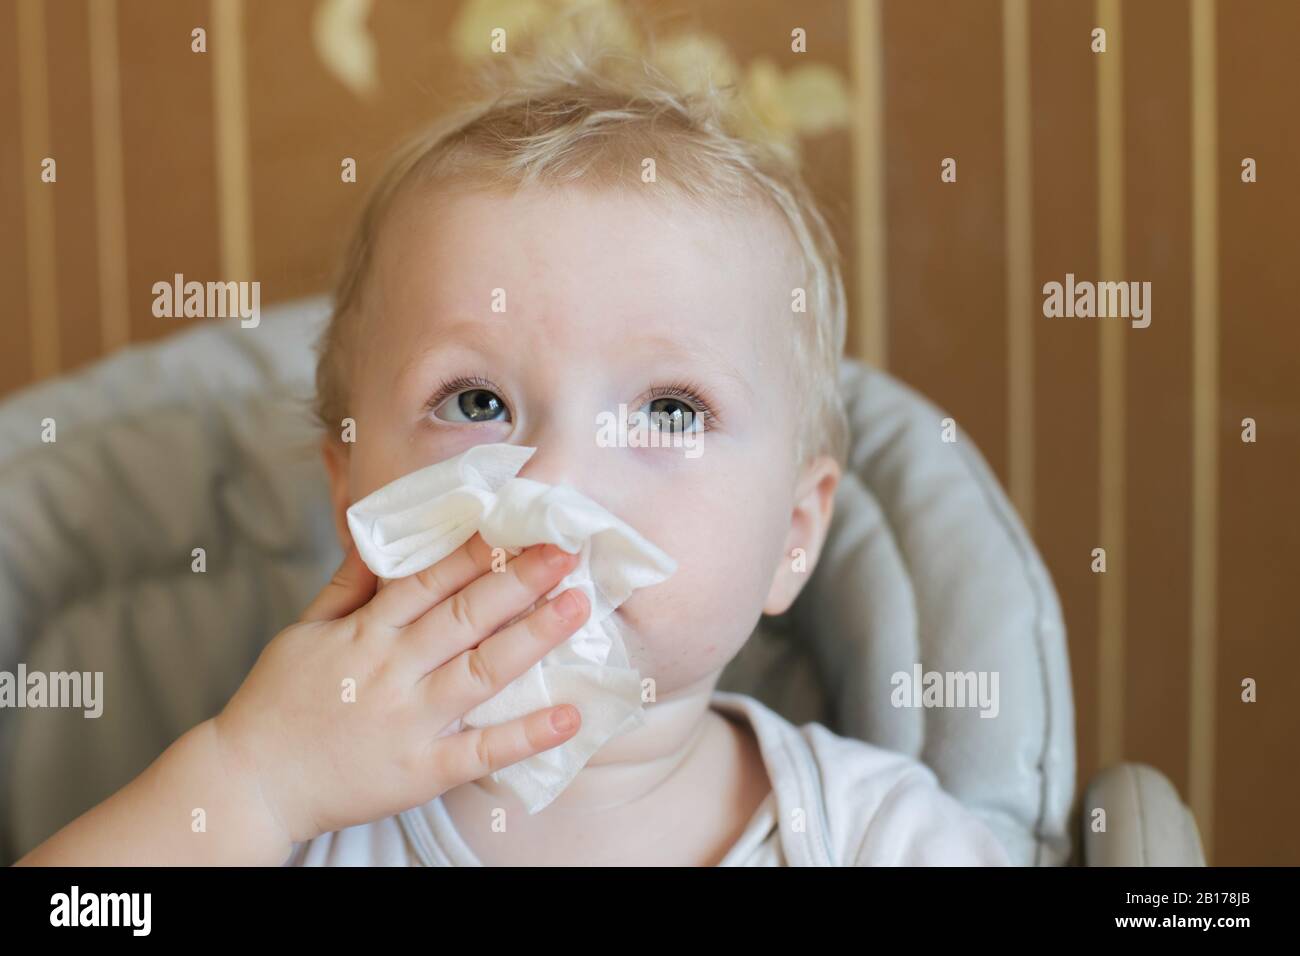 child wipes his nose with white handkerchief. Coronavirus symptom Stock Photo